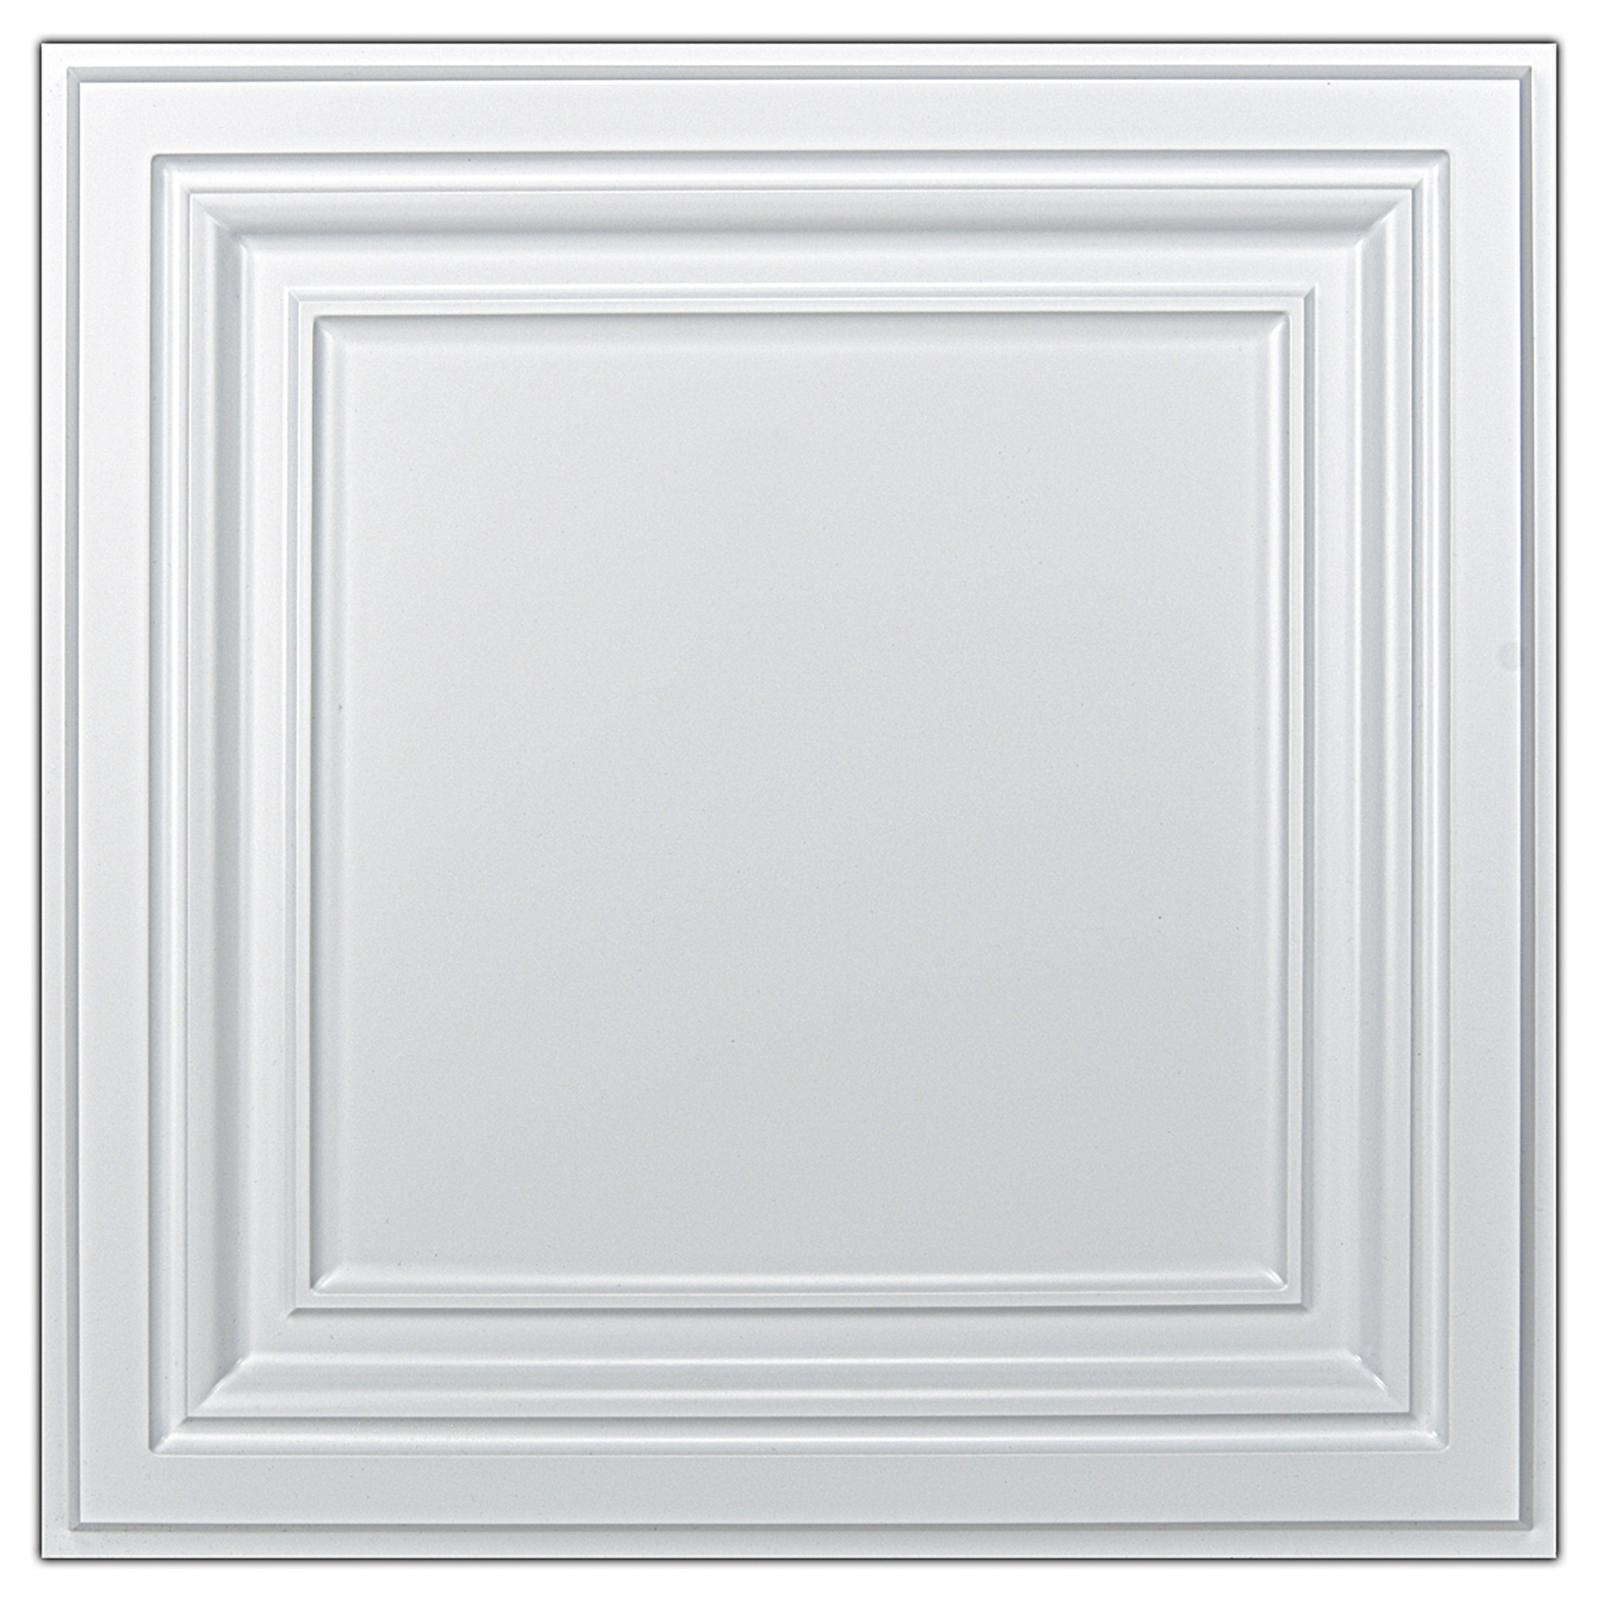 A10905-Art3d PVC Ceiling Tiles, 2'x2' Plastic Sheet in White (12-Pack)